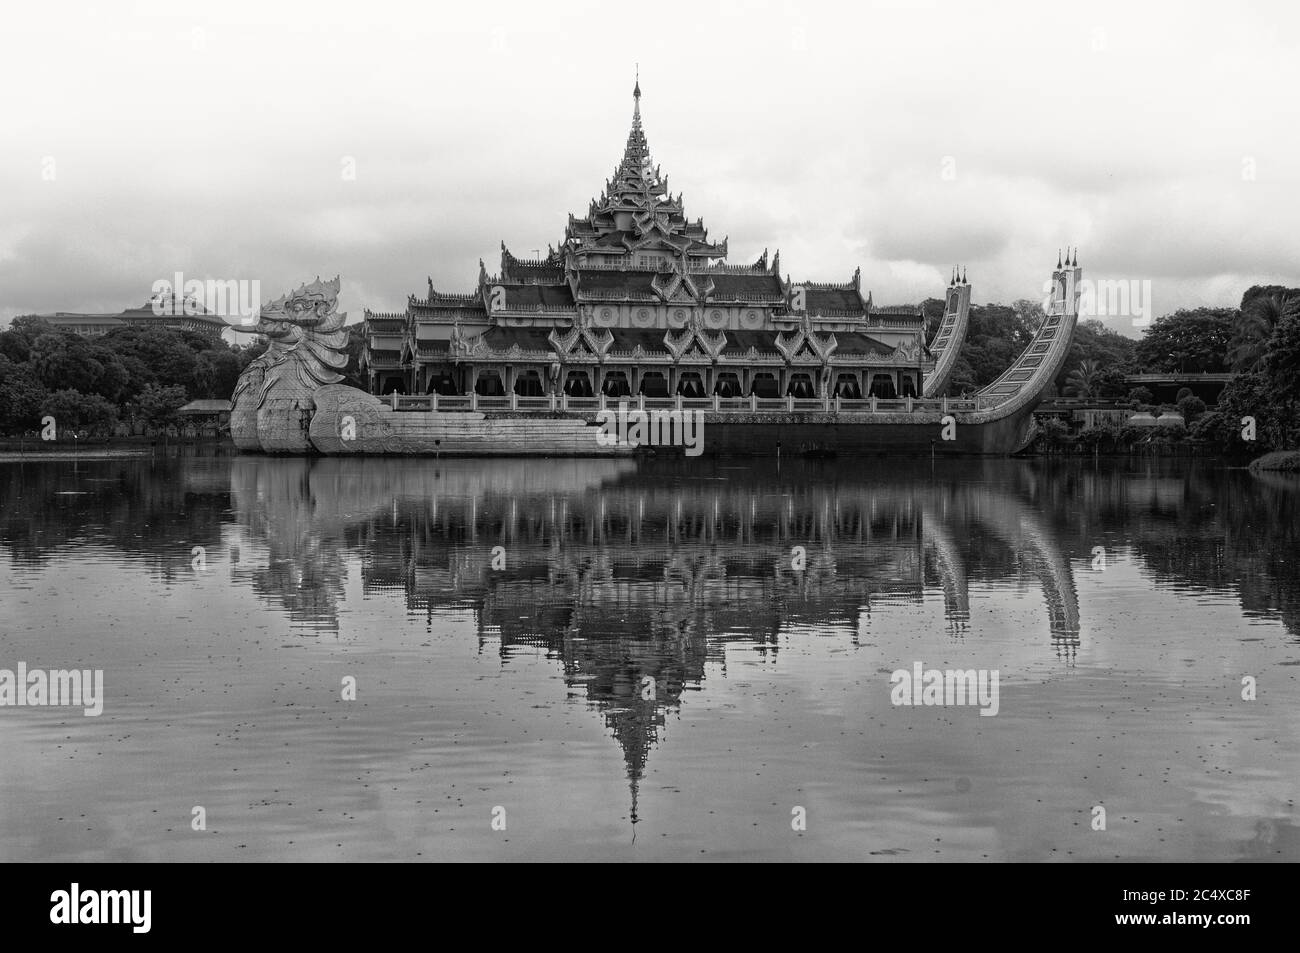 La barge royale de style Karawek sur le lac de Kandawygi, Yangon, Myanmar, anciennement Rangoon, Birmanie Banque D'Images